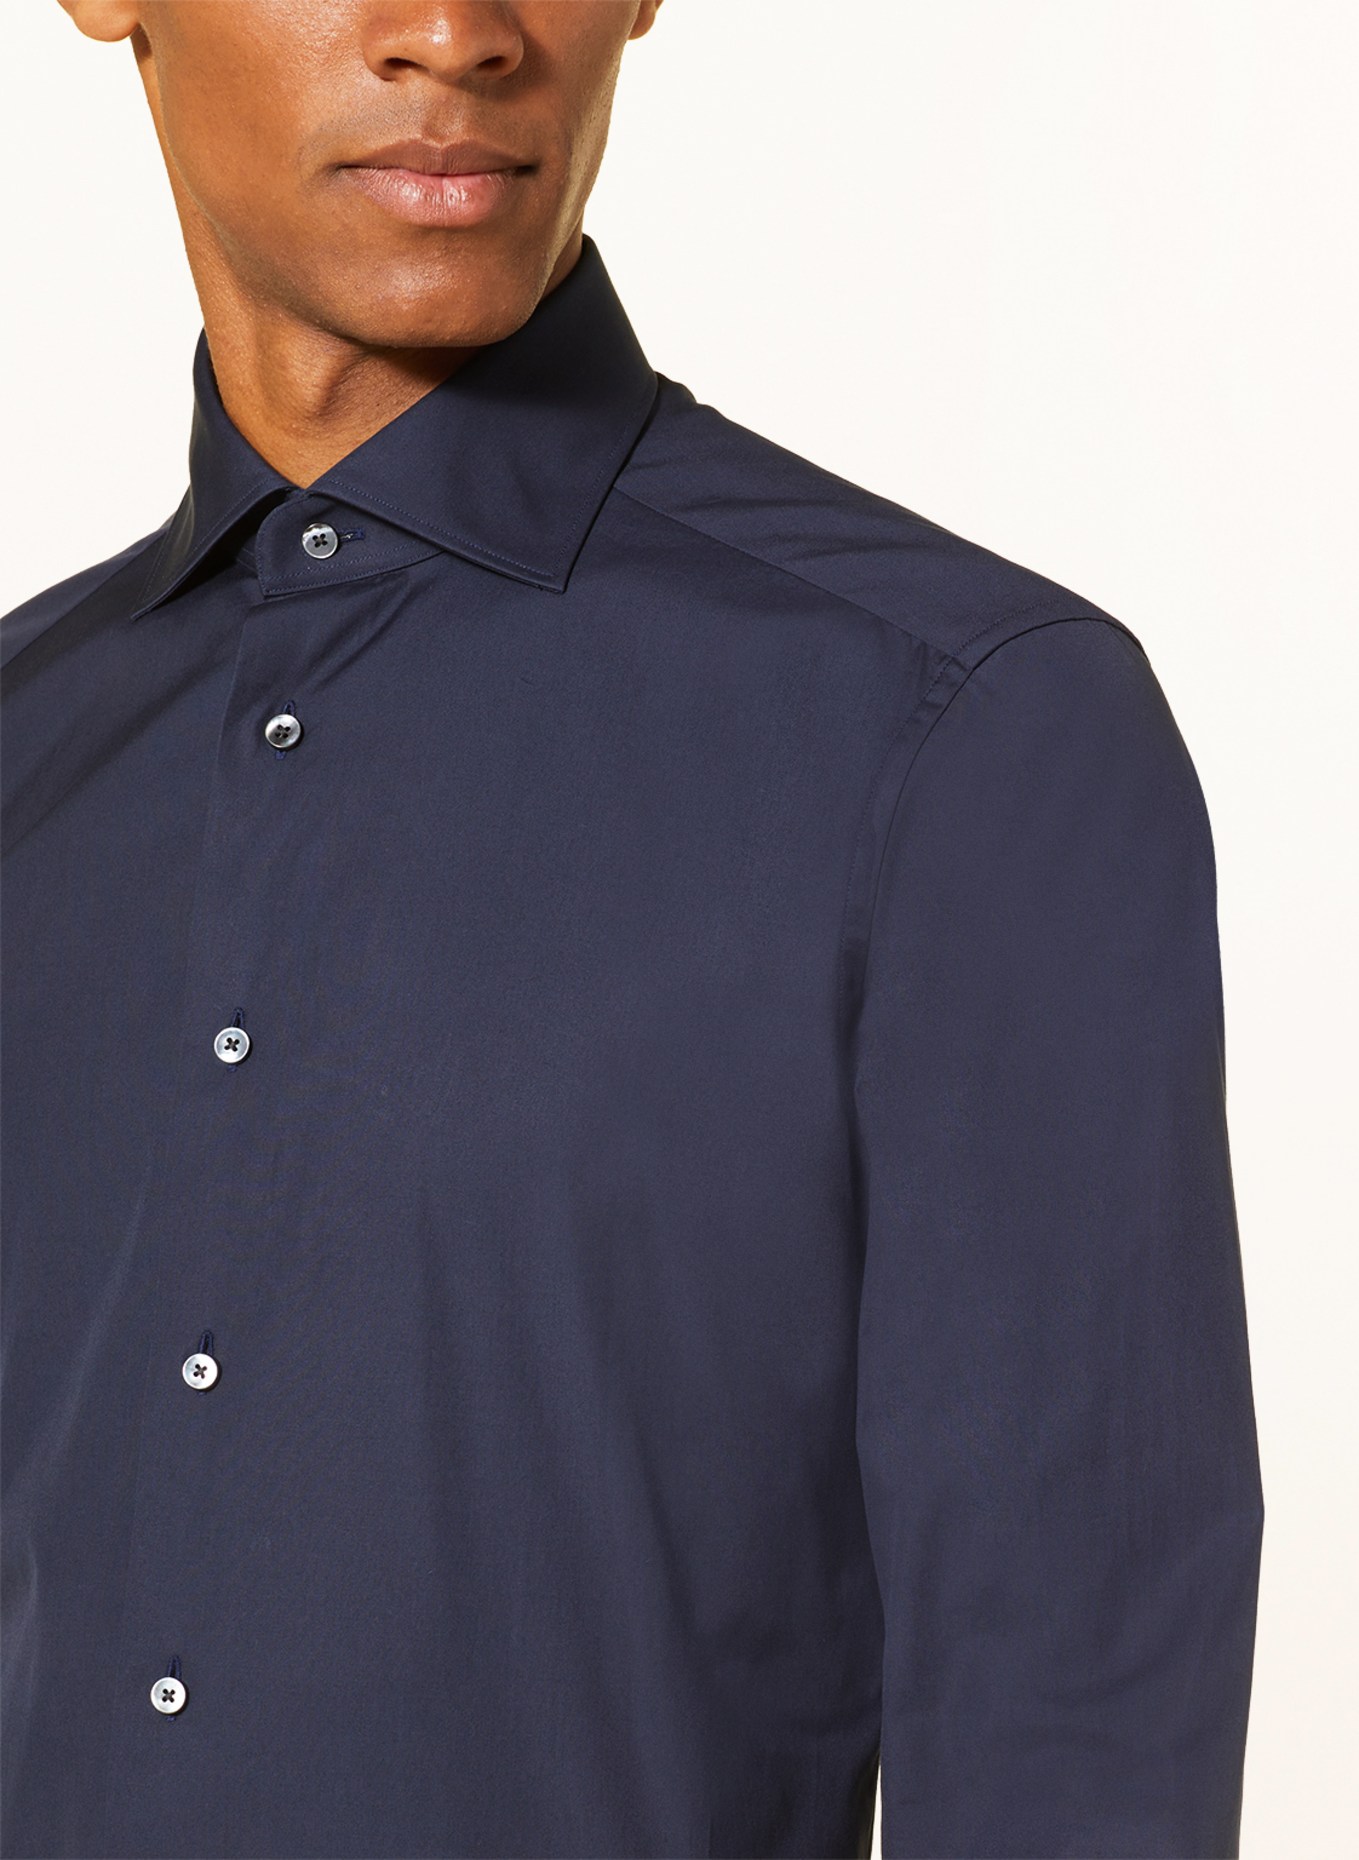 ZEGNA Shirt regular fit, Color: DARK BLUE (Image 4)